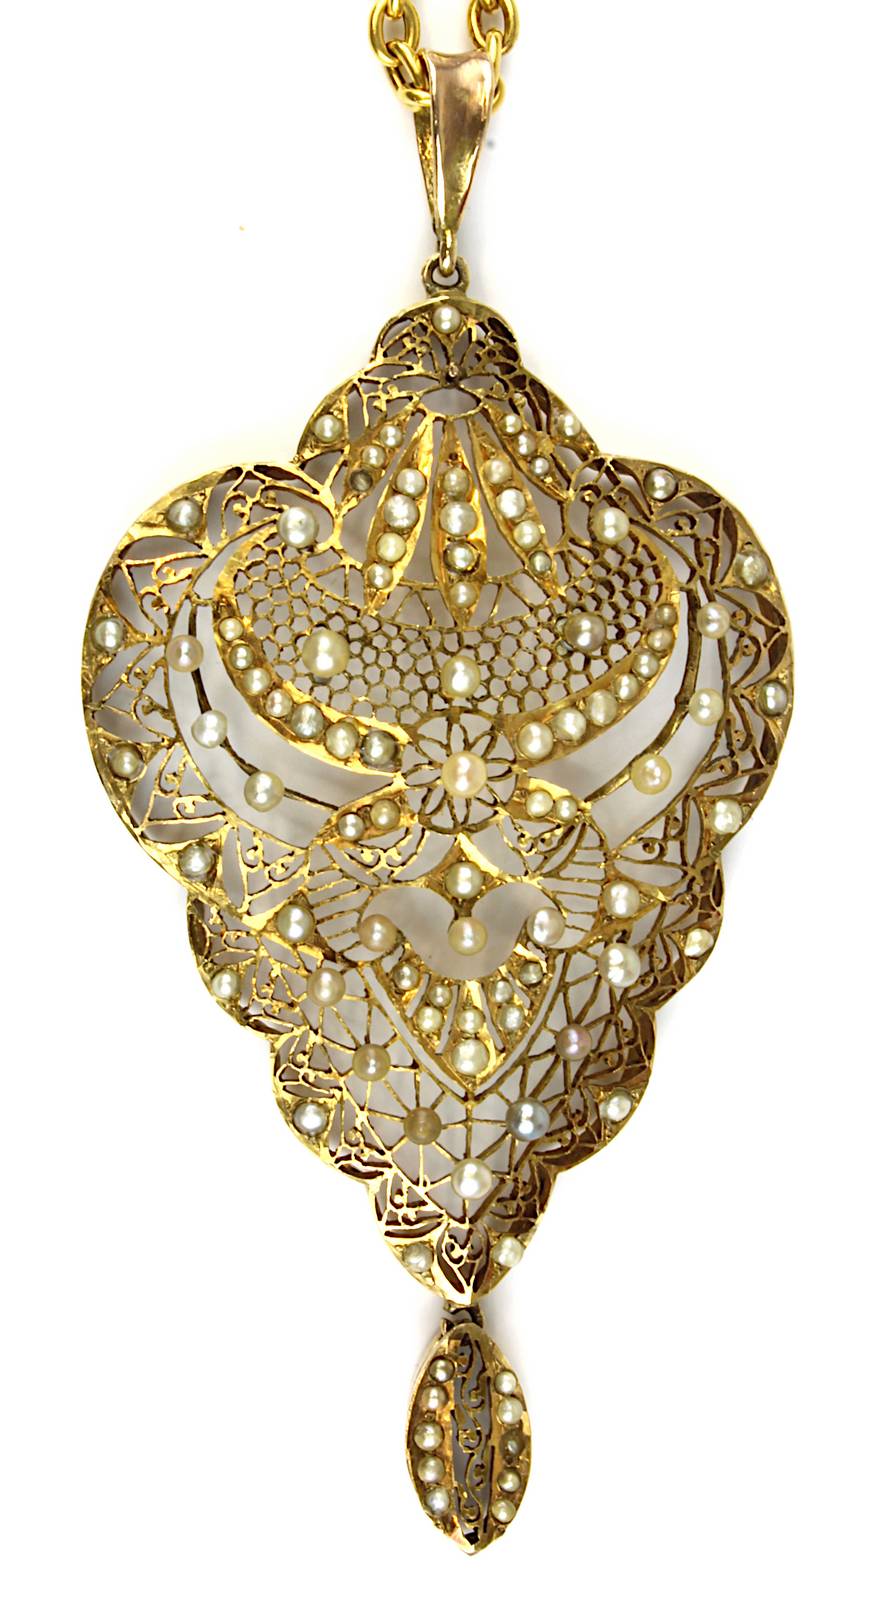 Gelbgold-Perlanhänger an Gelbgoldkette mit Perlen, filigran durchbrochen gearbeiteter Anhänger in - Image 2 of 2